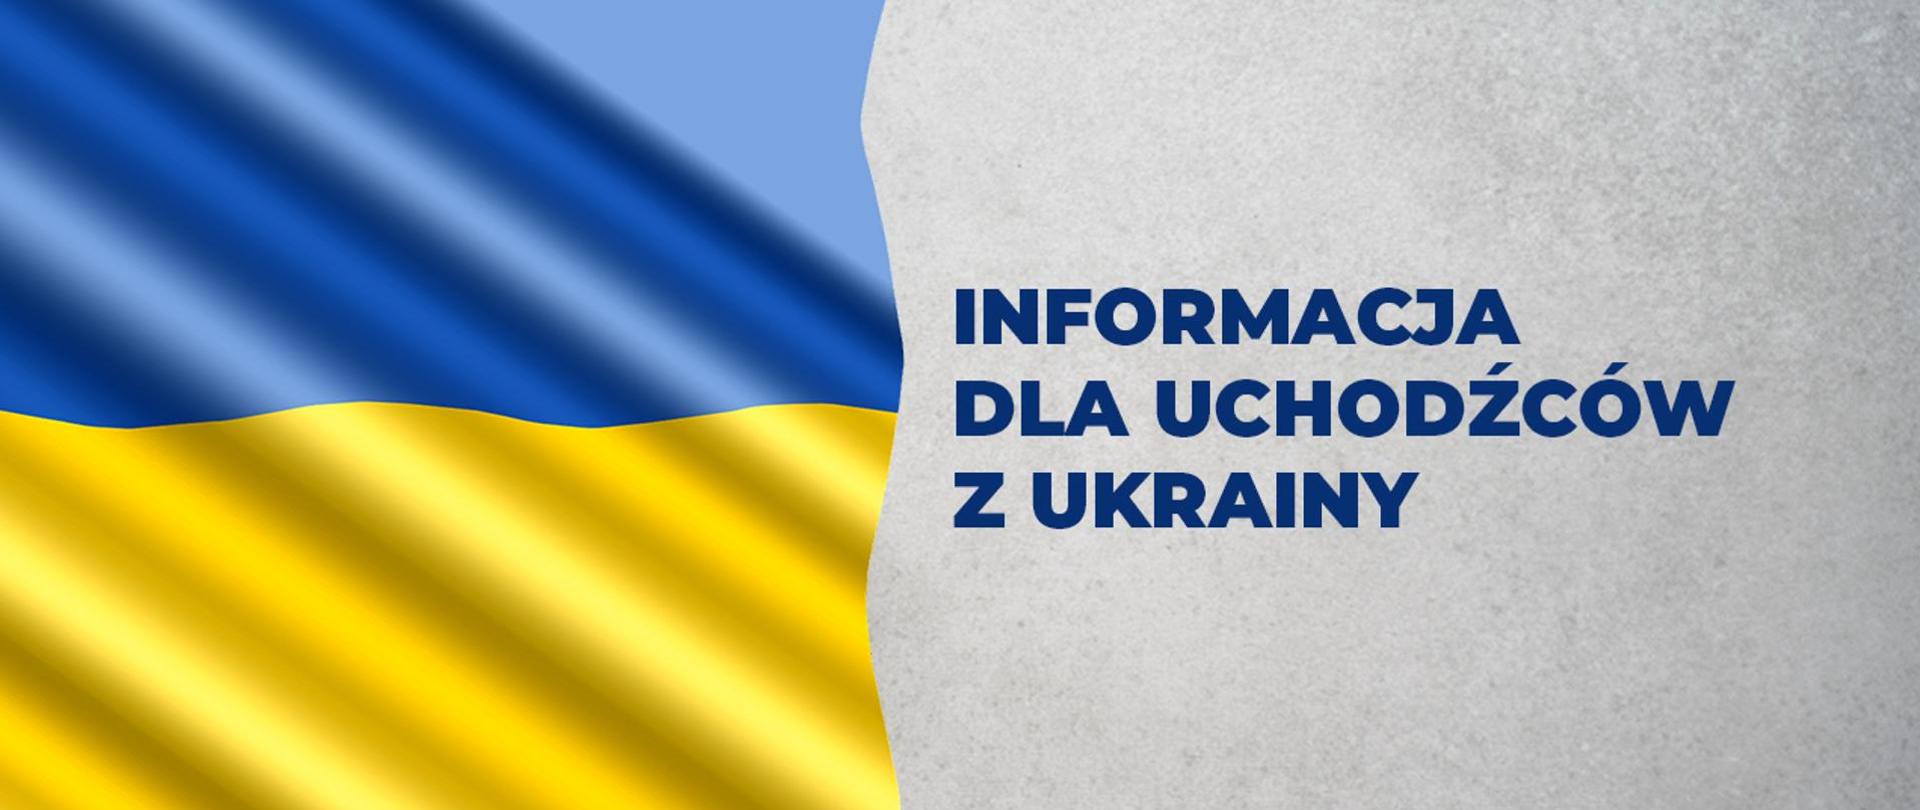 Zdjęcie przedstawia flagę Ukrainy z podpisem " Informacja dla uchodźców z Ukrainy"